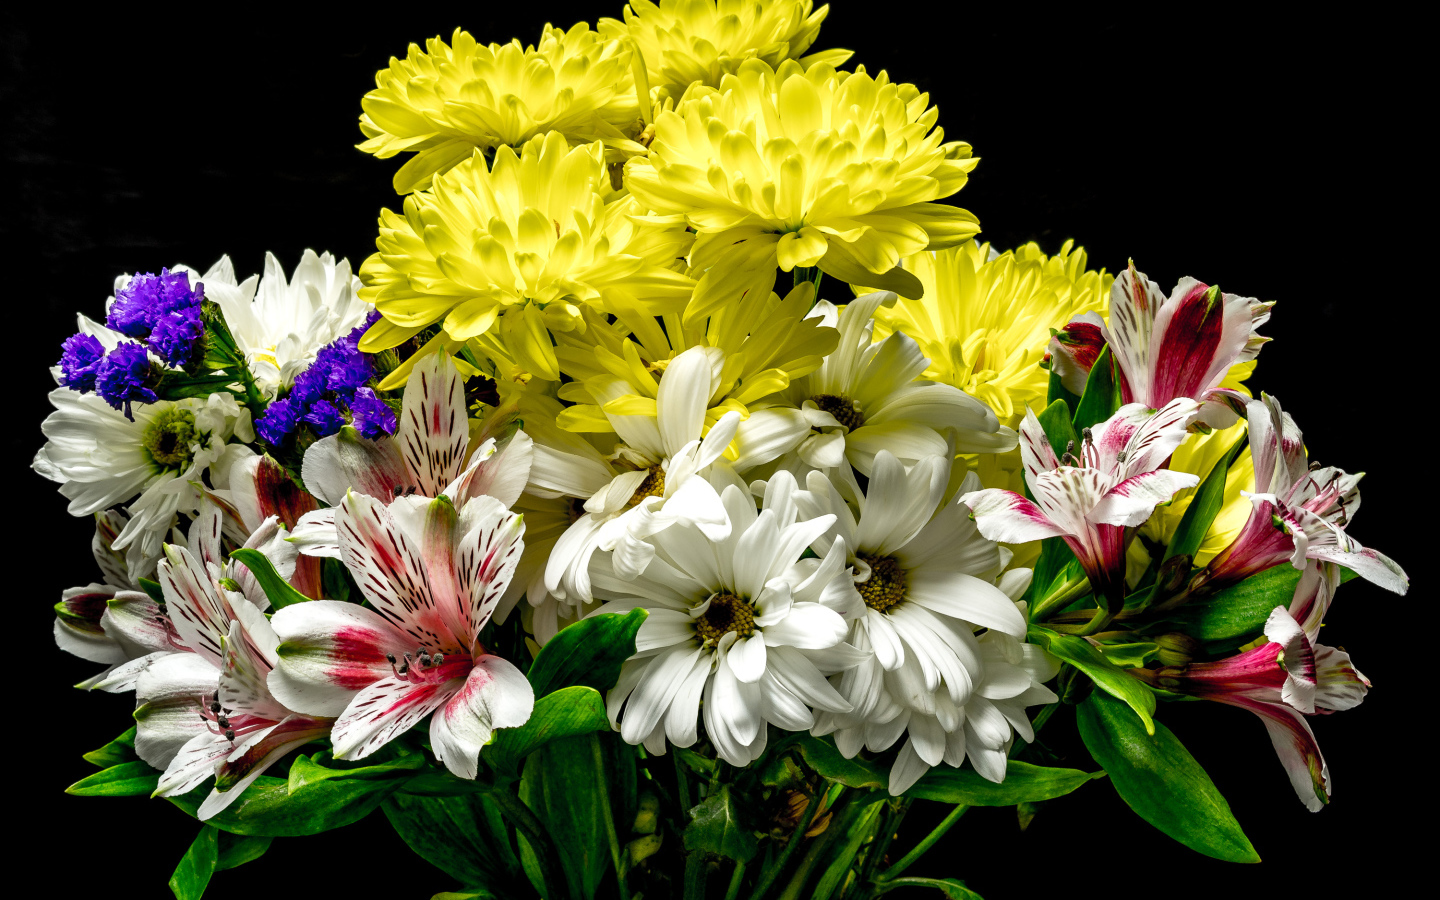 Букет с цветами хризантемы и альстромерии на черном фоне